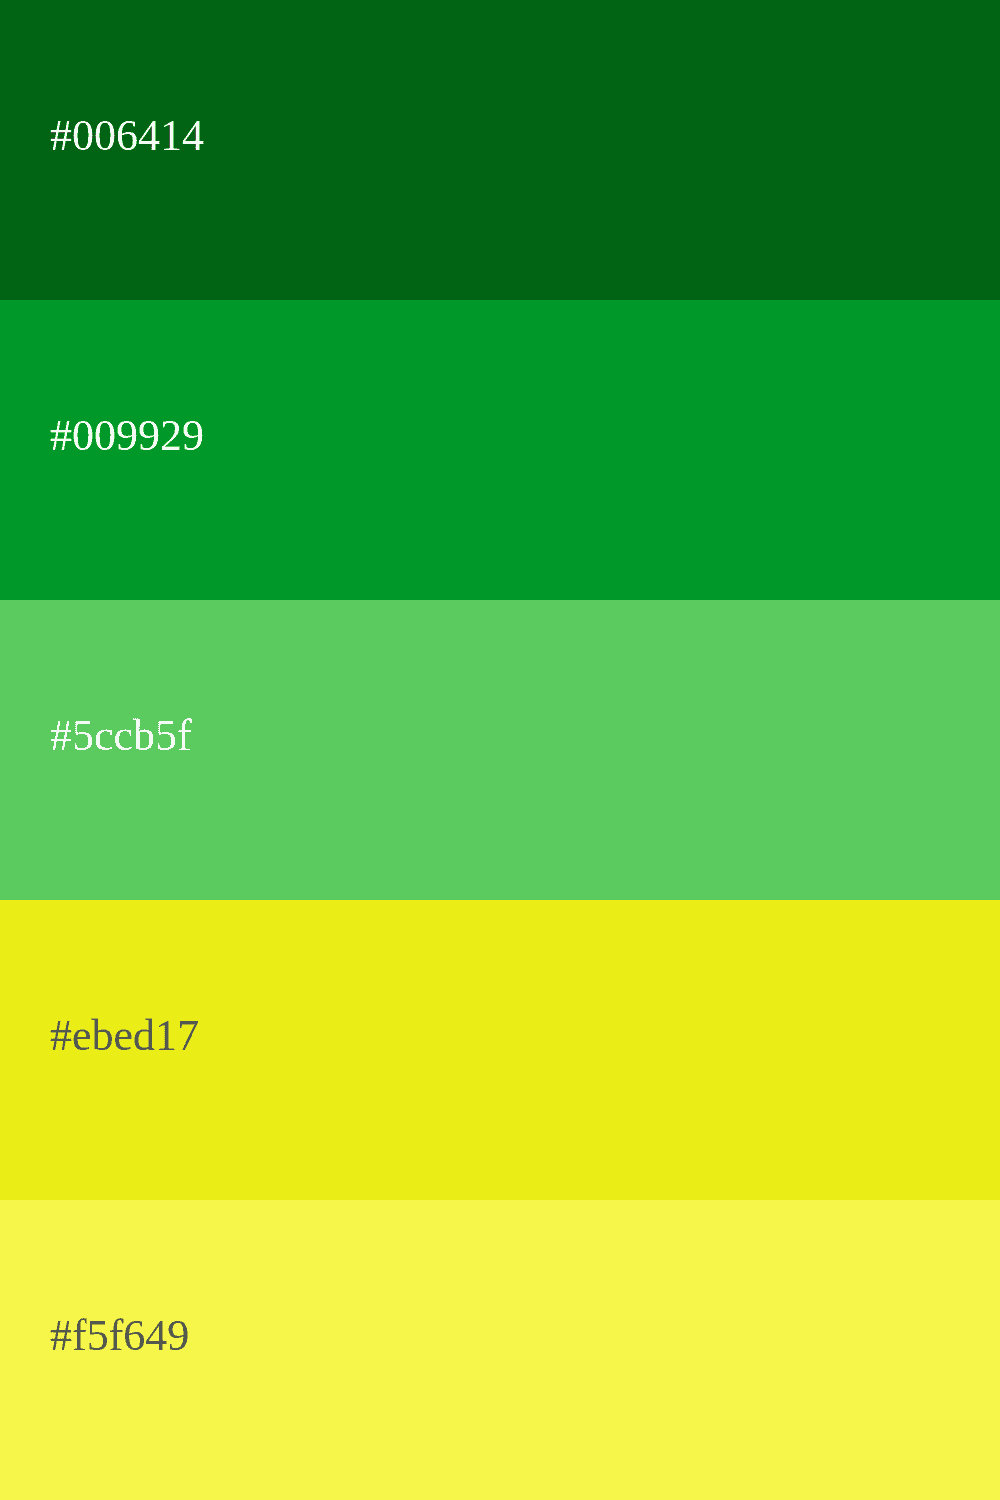 cor verde e amarela